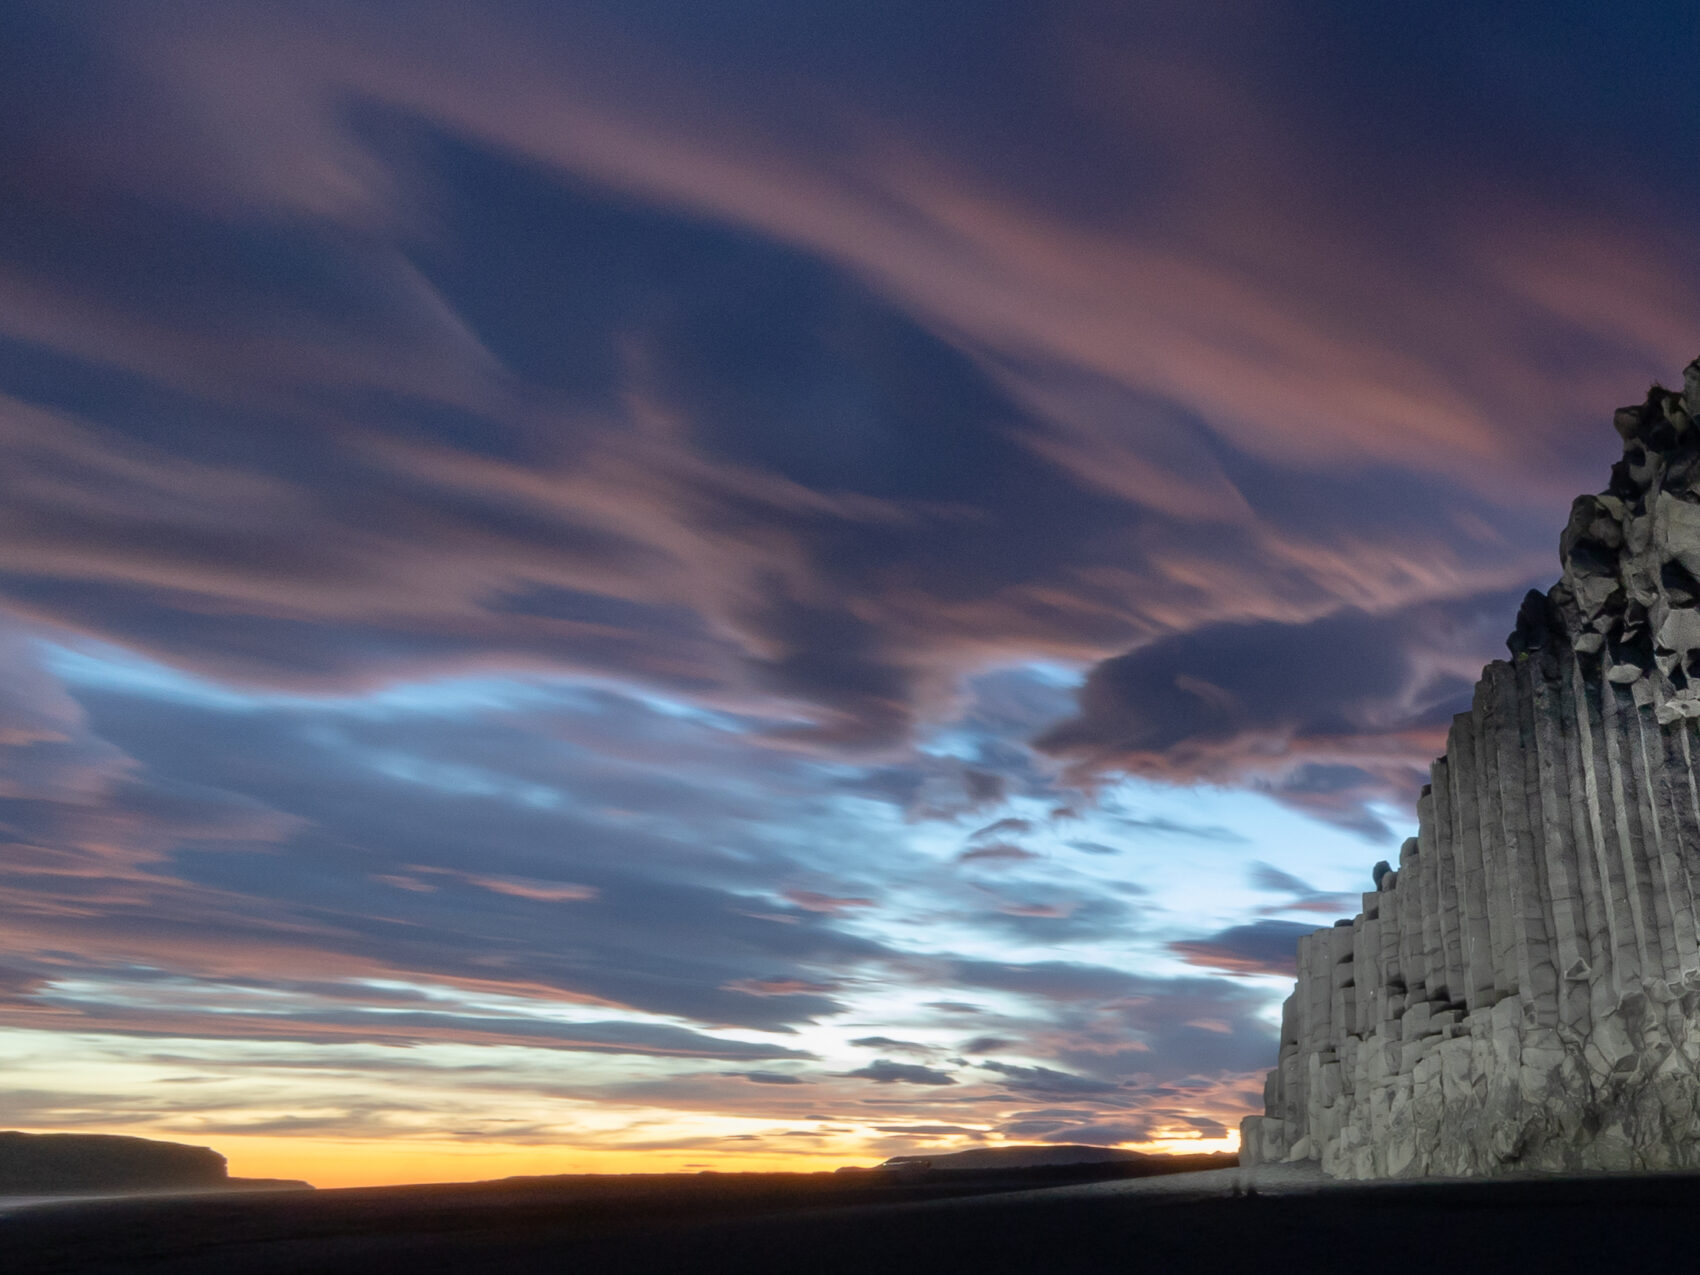 Island Reynisdrangar, Basaltsäulen am rechten Bildrand, schwarzer Sand und lila leuchtende Wolken am Himmel